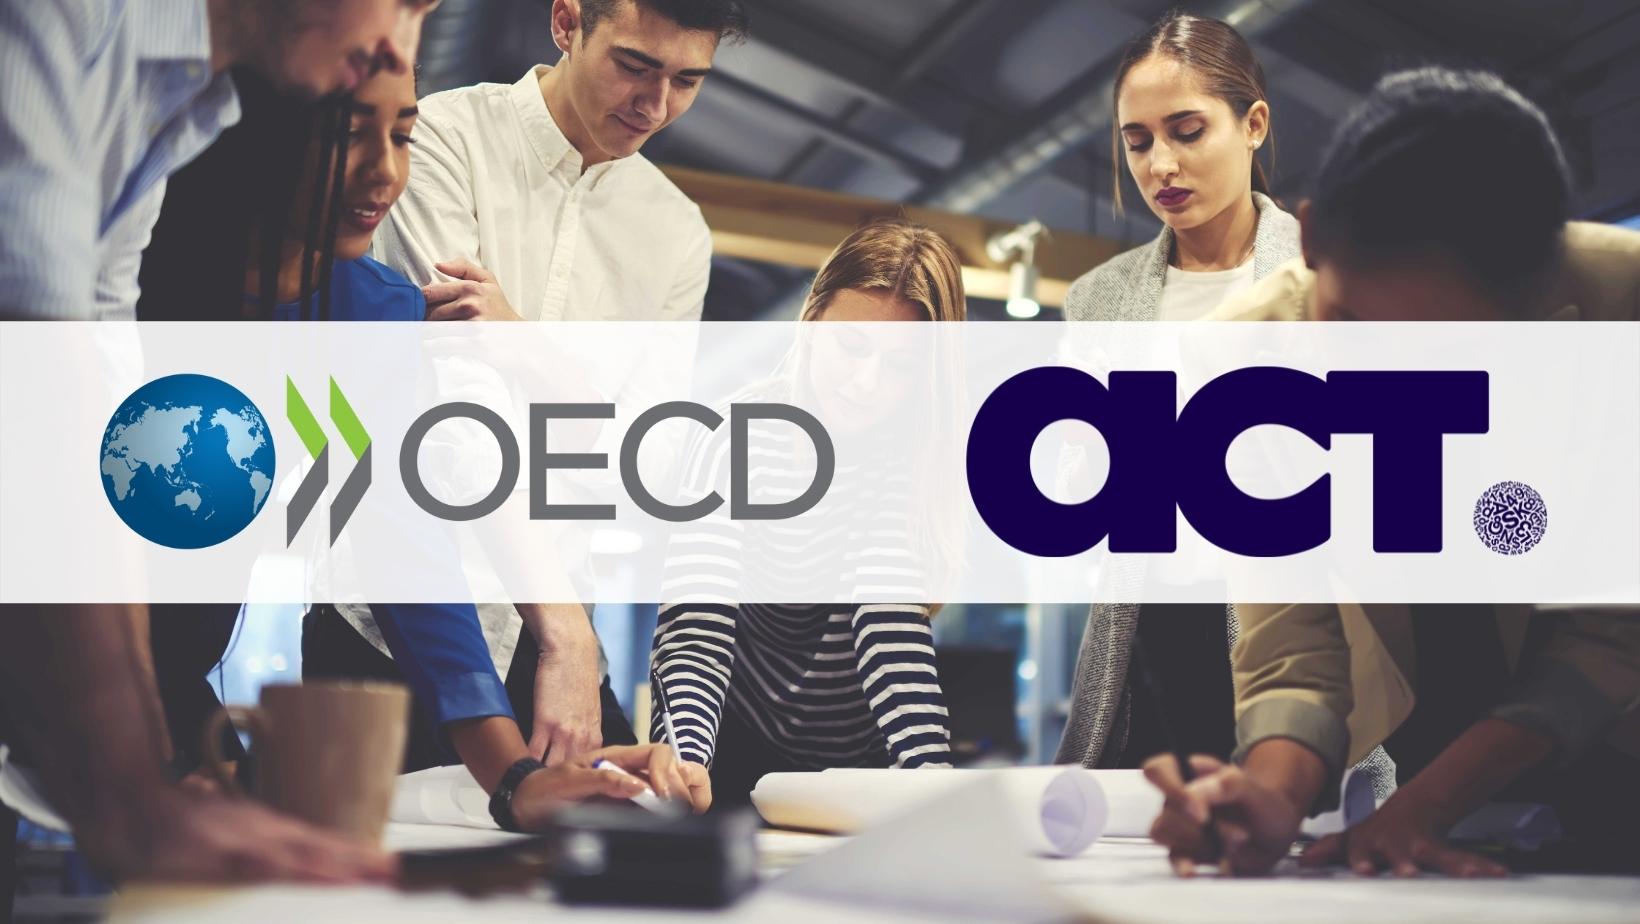 OECD-ის დაკვეთით ACT მიკრო, მცირე და საშუალო ზომის საწარმოების (MSMES) ფინანსური წიგნიერების დონის შესწავლას განახორციელებს